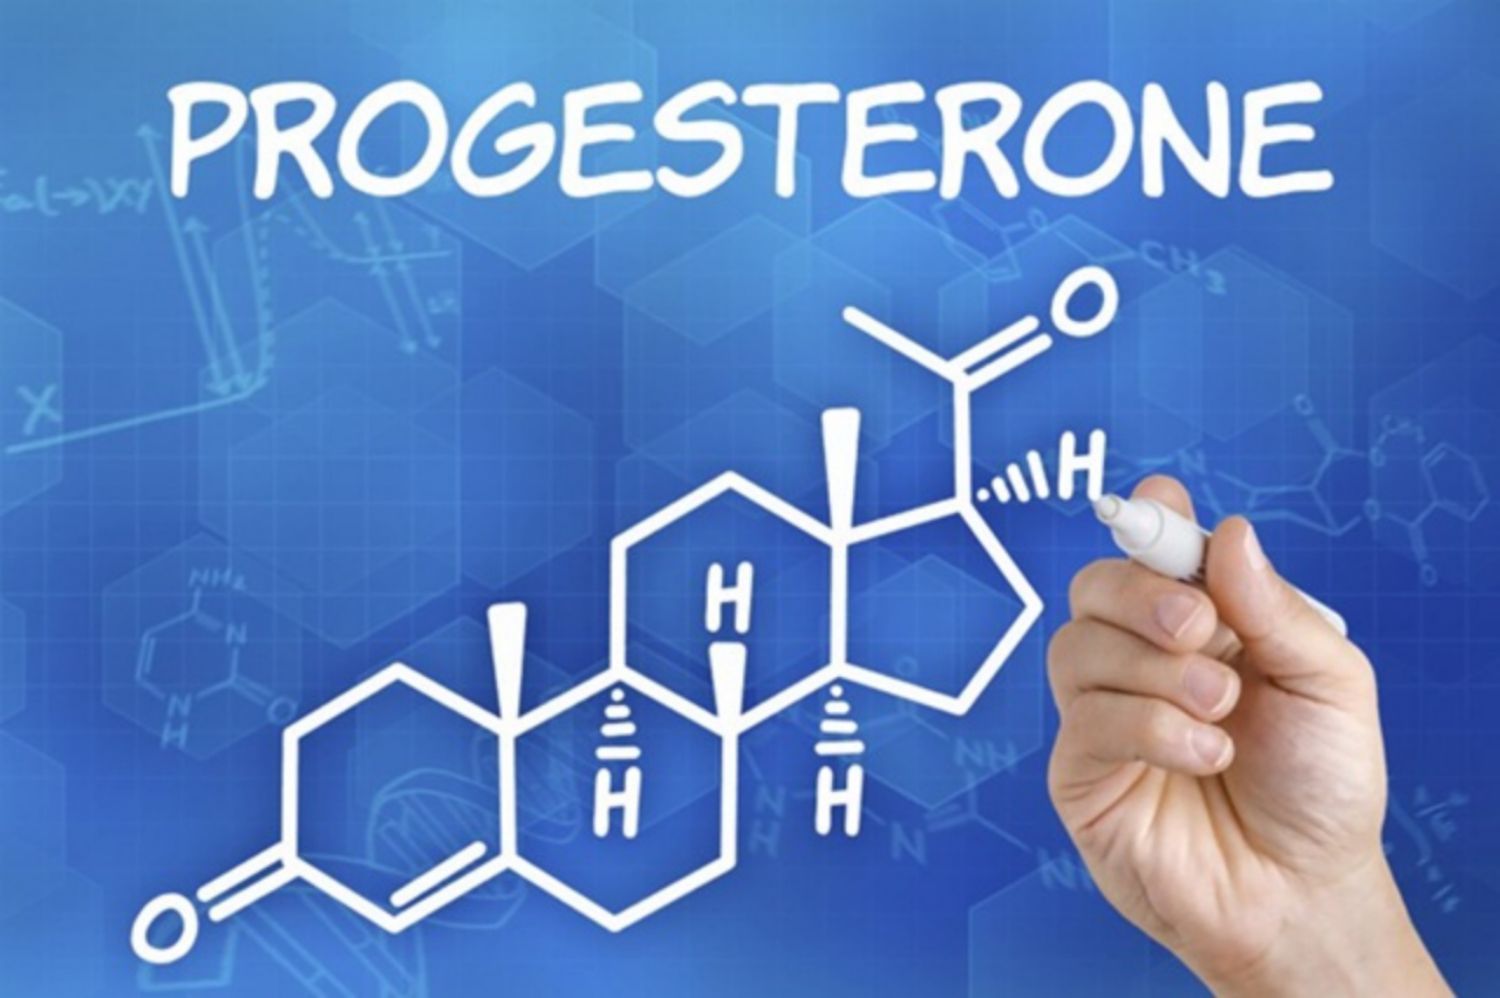 Progesterone thấp có tác động như thế nào?